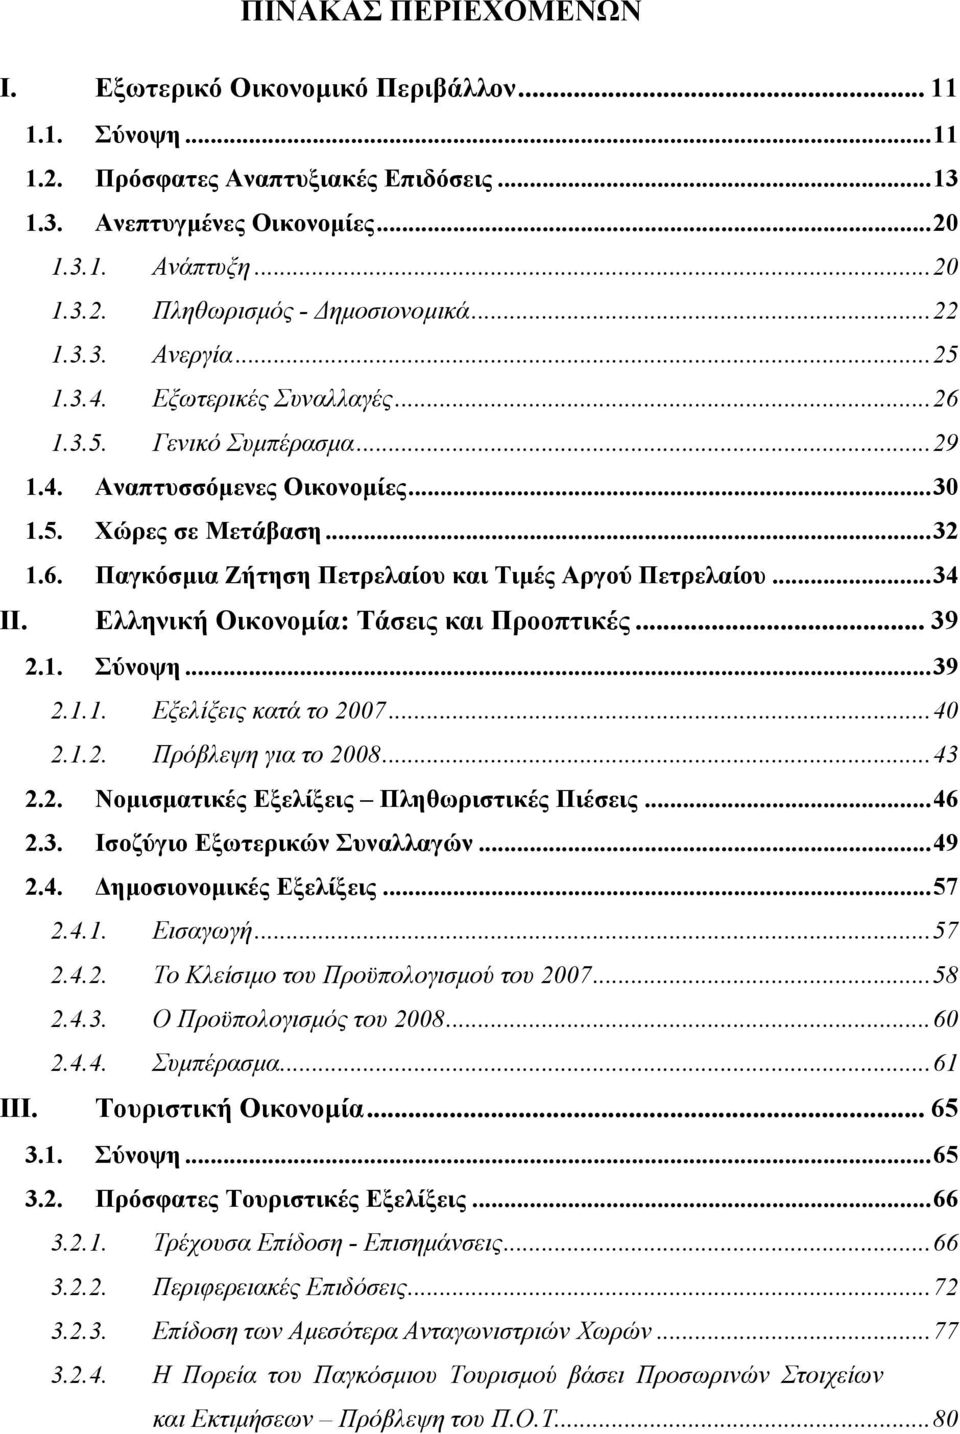 ..34 ΙΙ. Ελληνική Οικονοµία: Τάσεις και Προοπτικές... 39 2.1. Σύνοψη...39 2.1.1. Εξελίξεις κατά το 2007...40 2.1.2. Πρόβλεψη για το 2008...43 2.2. Νοµισµατικές Εξελίξεις Πληθωριστικές Πιέσεις...46 2.